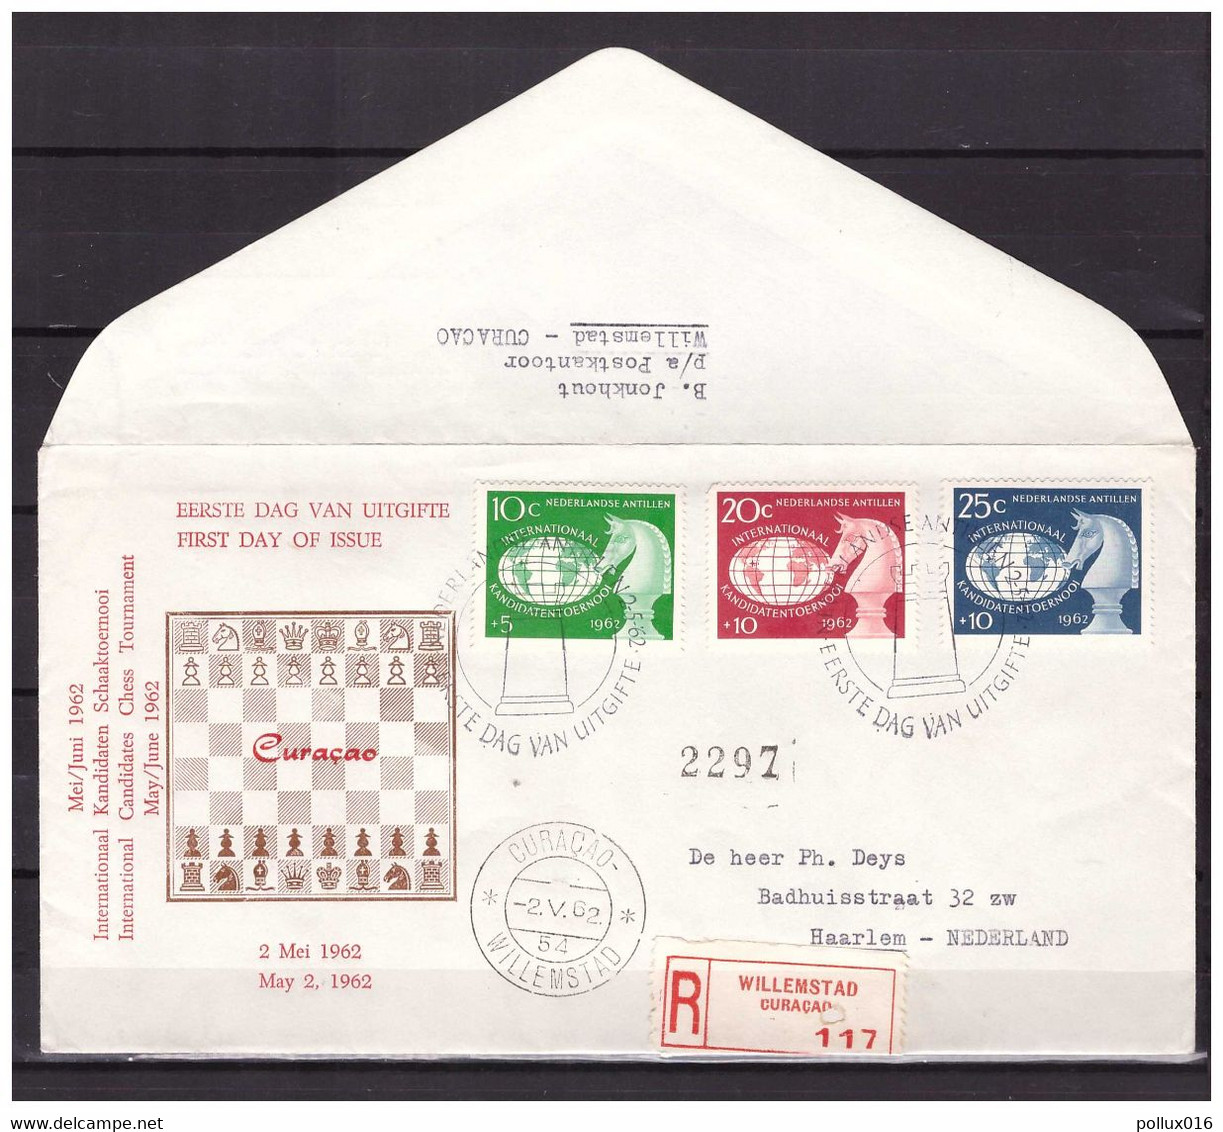 Antillen / Antilles 1962 FDC 22 Schaken Chess - Curaçao, Nederlandse Antillen, Aruba